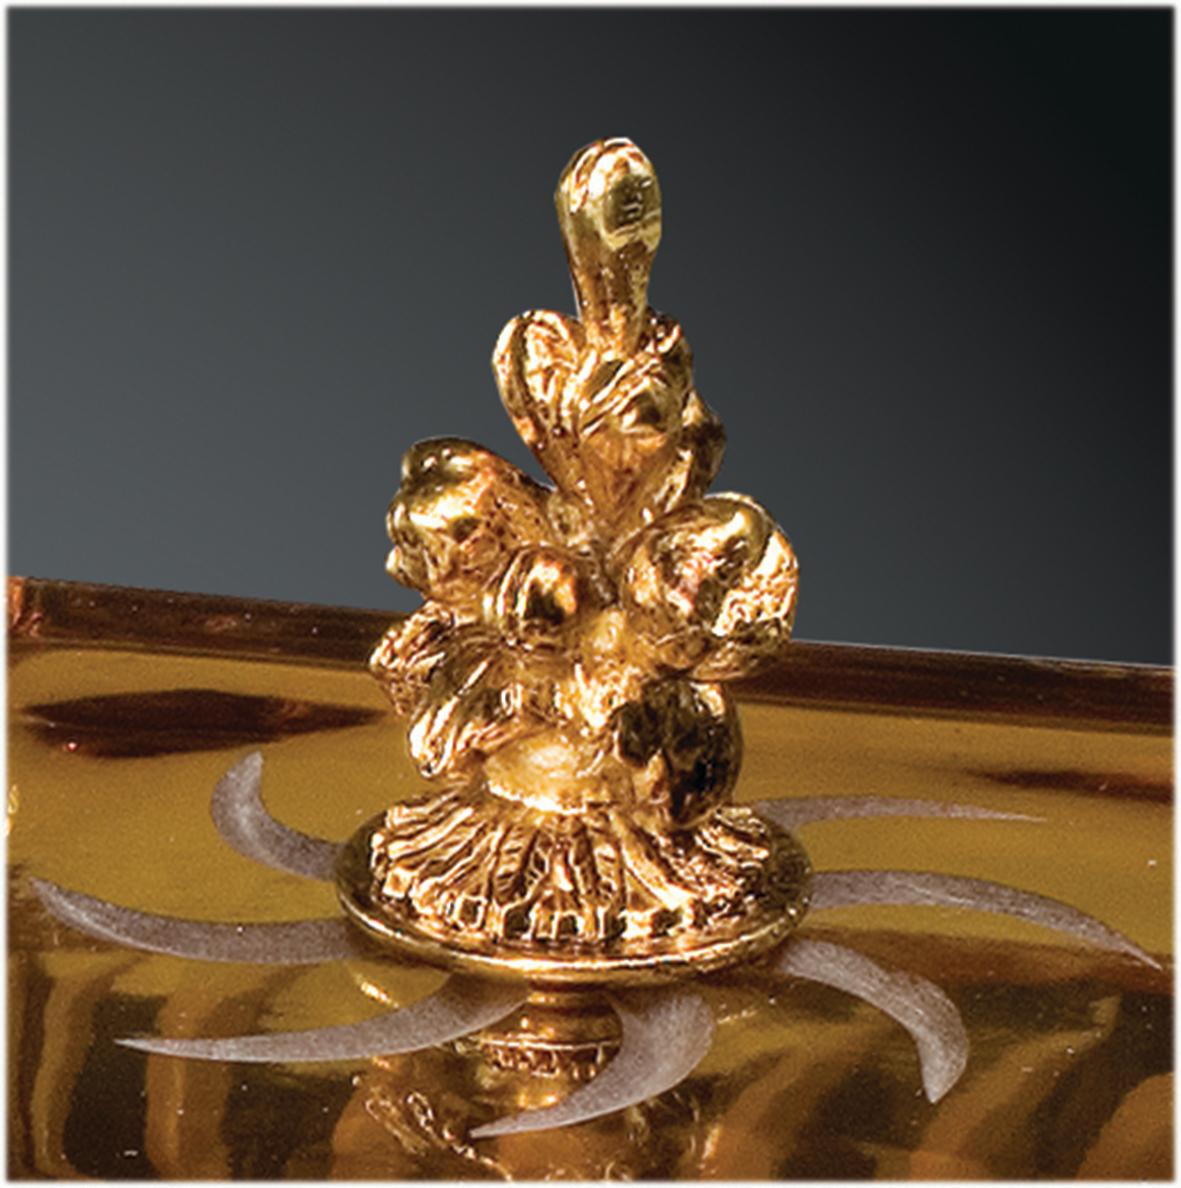 Boîte en cristal ambre avec gravures en taille opaque agrémentées de détails en laiton, réalisée selon la technique artisanale de la cire perdue avec finition en or patiné. Chaque objet est fabriqué à la main et le soin apporté à chaque détail rend